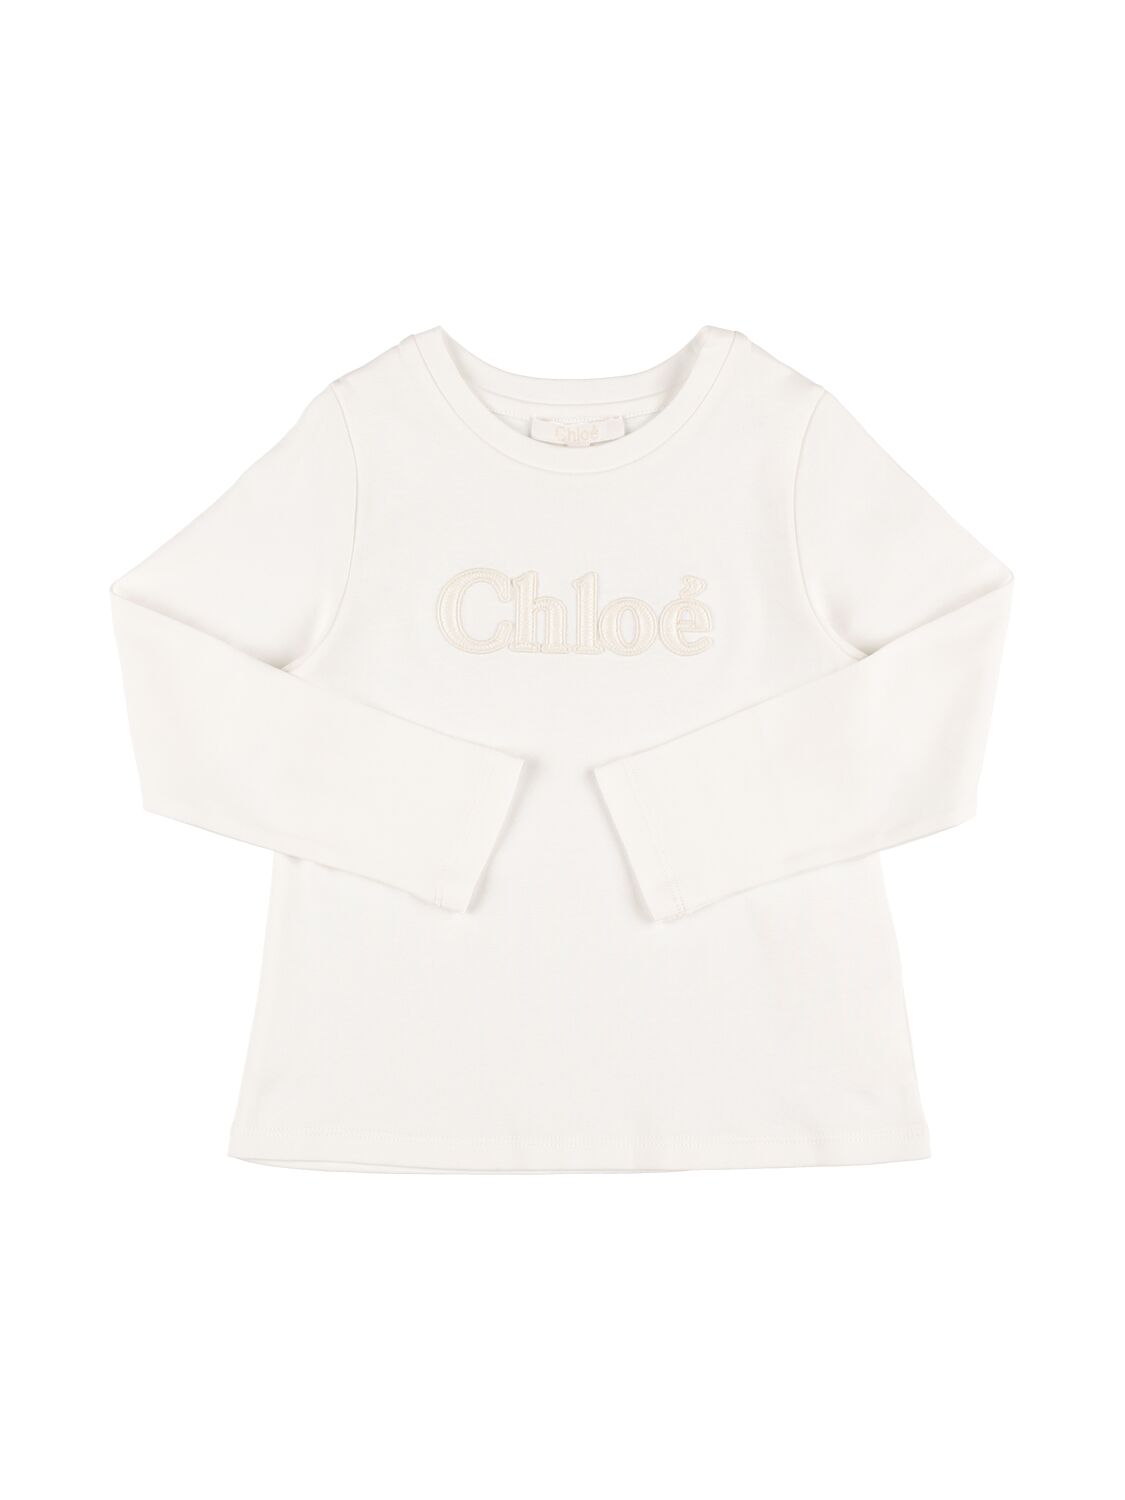 Chloé Kids' Organic Cotton Jersey T-shirt W/logo In White